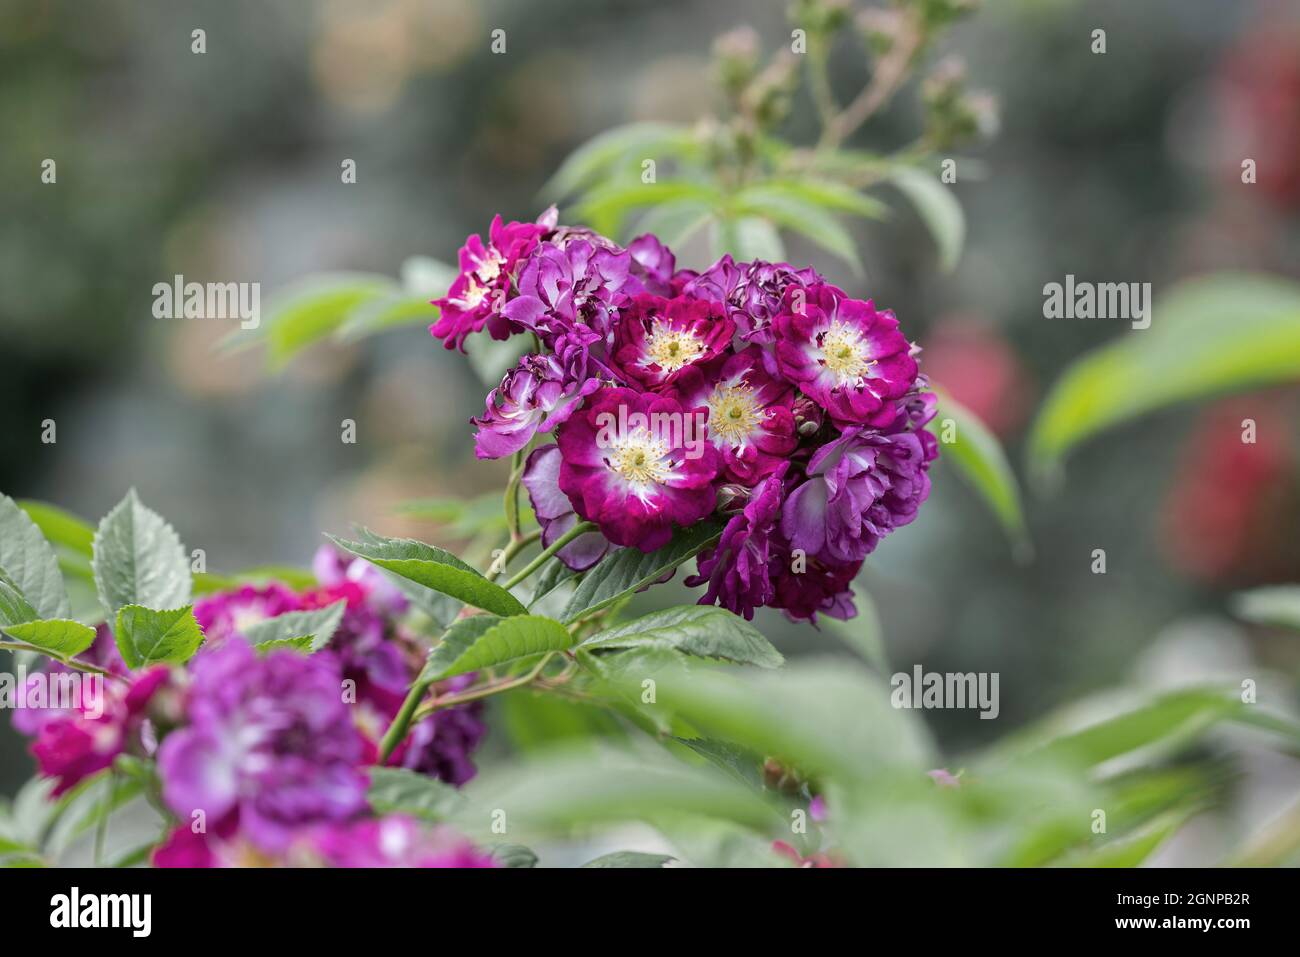 Rose Bleu vivace (Rosa 'Bleu vivace', Rosa Bleu vivace), fleurs de cultivar Bleu vivace, Allemagne Banque D'Images